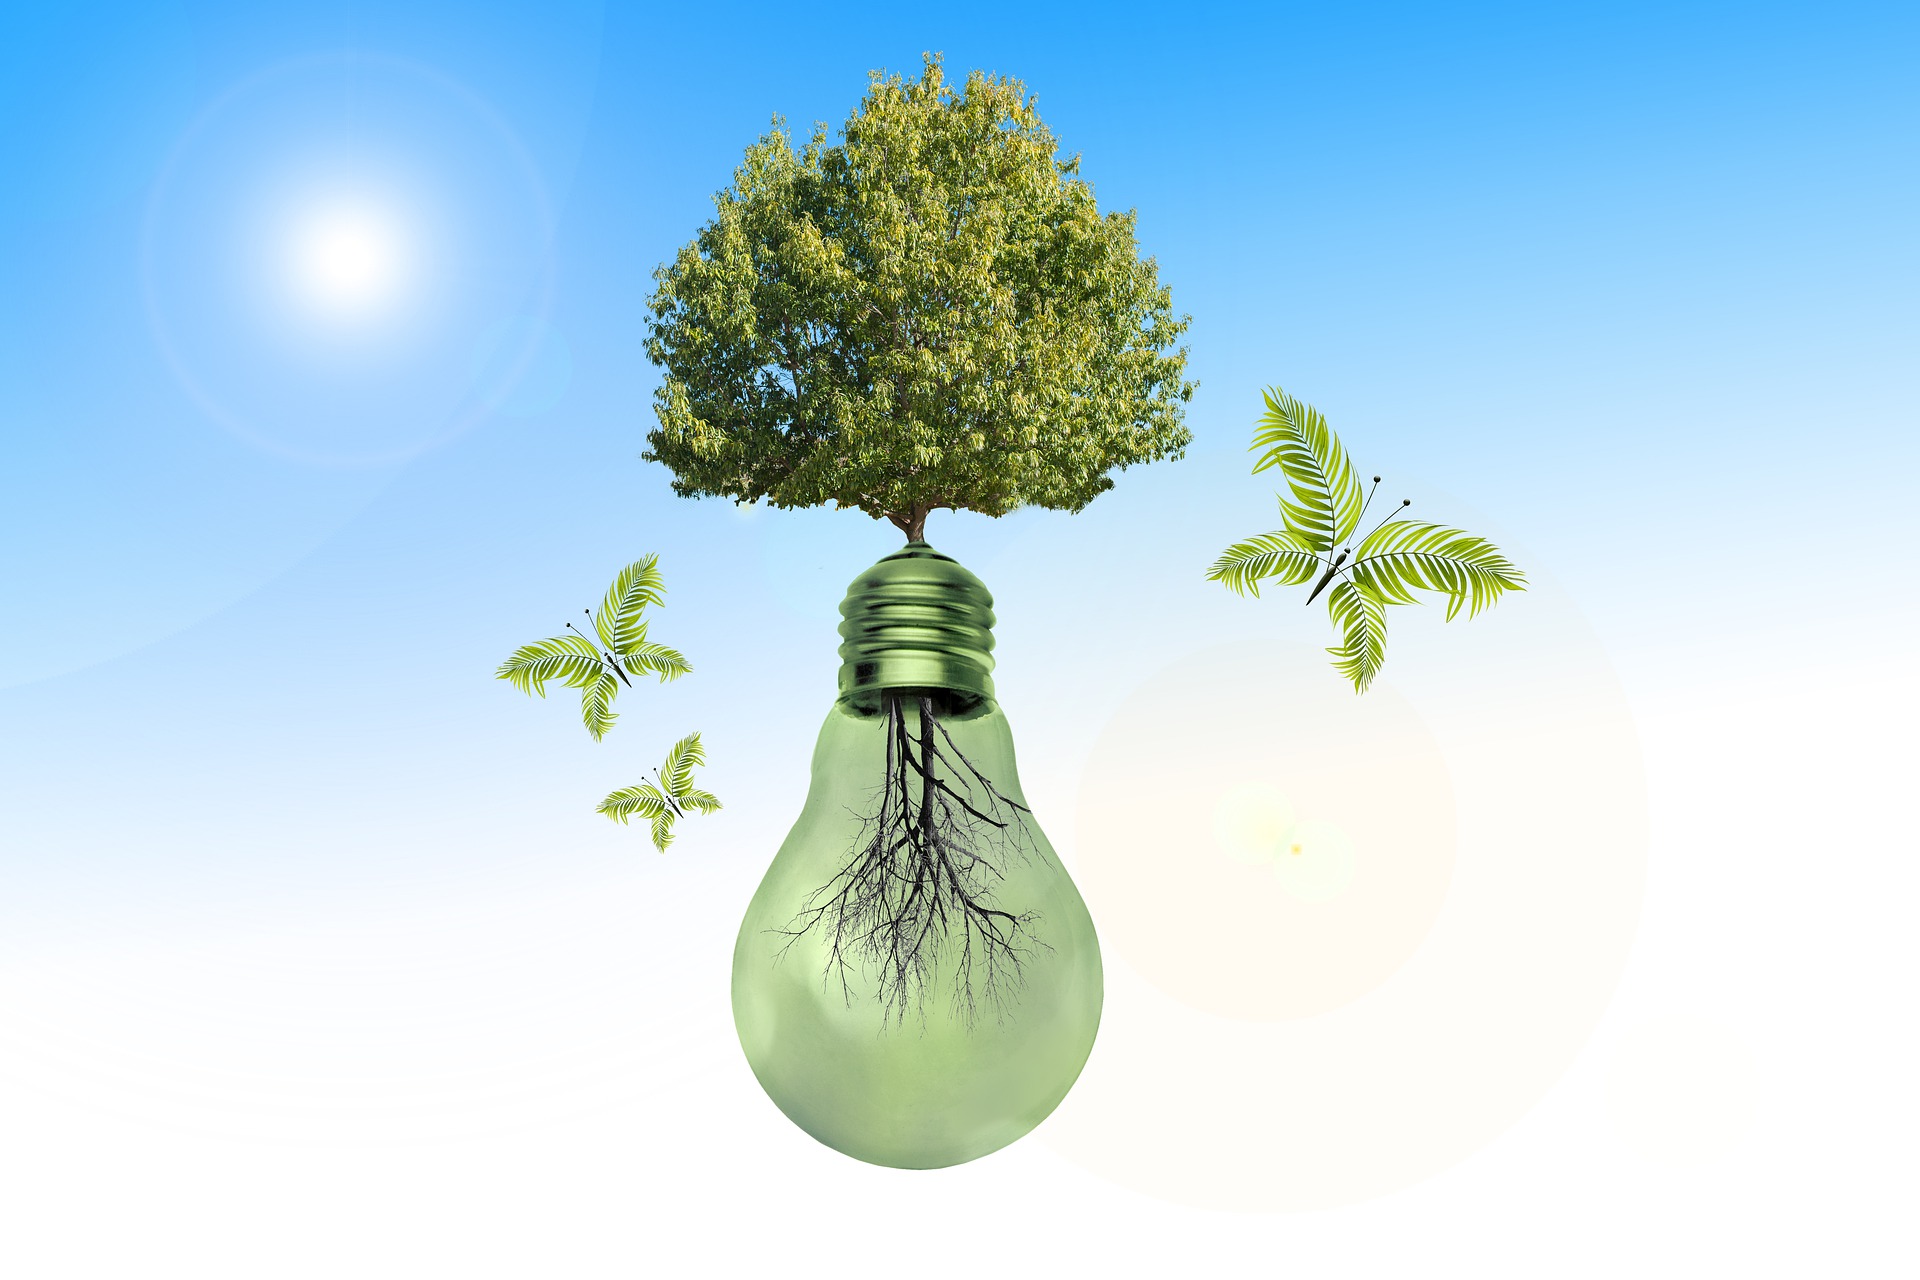 Baum wächst aus Glühbirne als Zeichen für erneuerbare Energiequellen